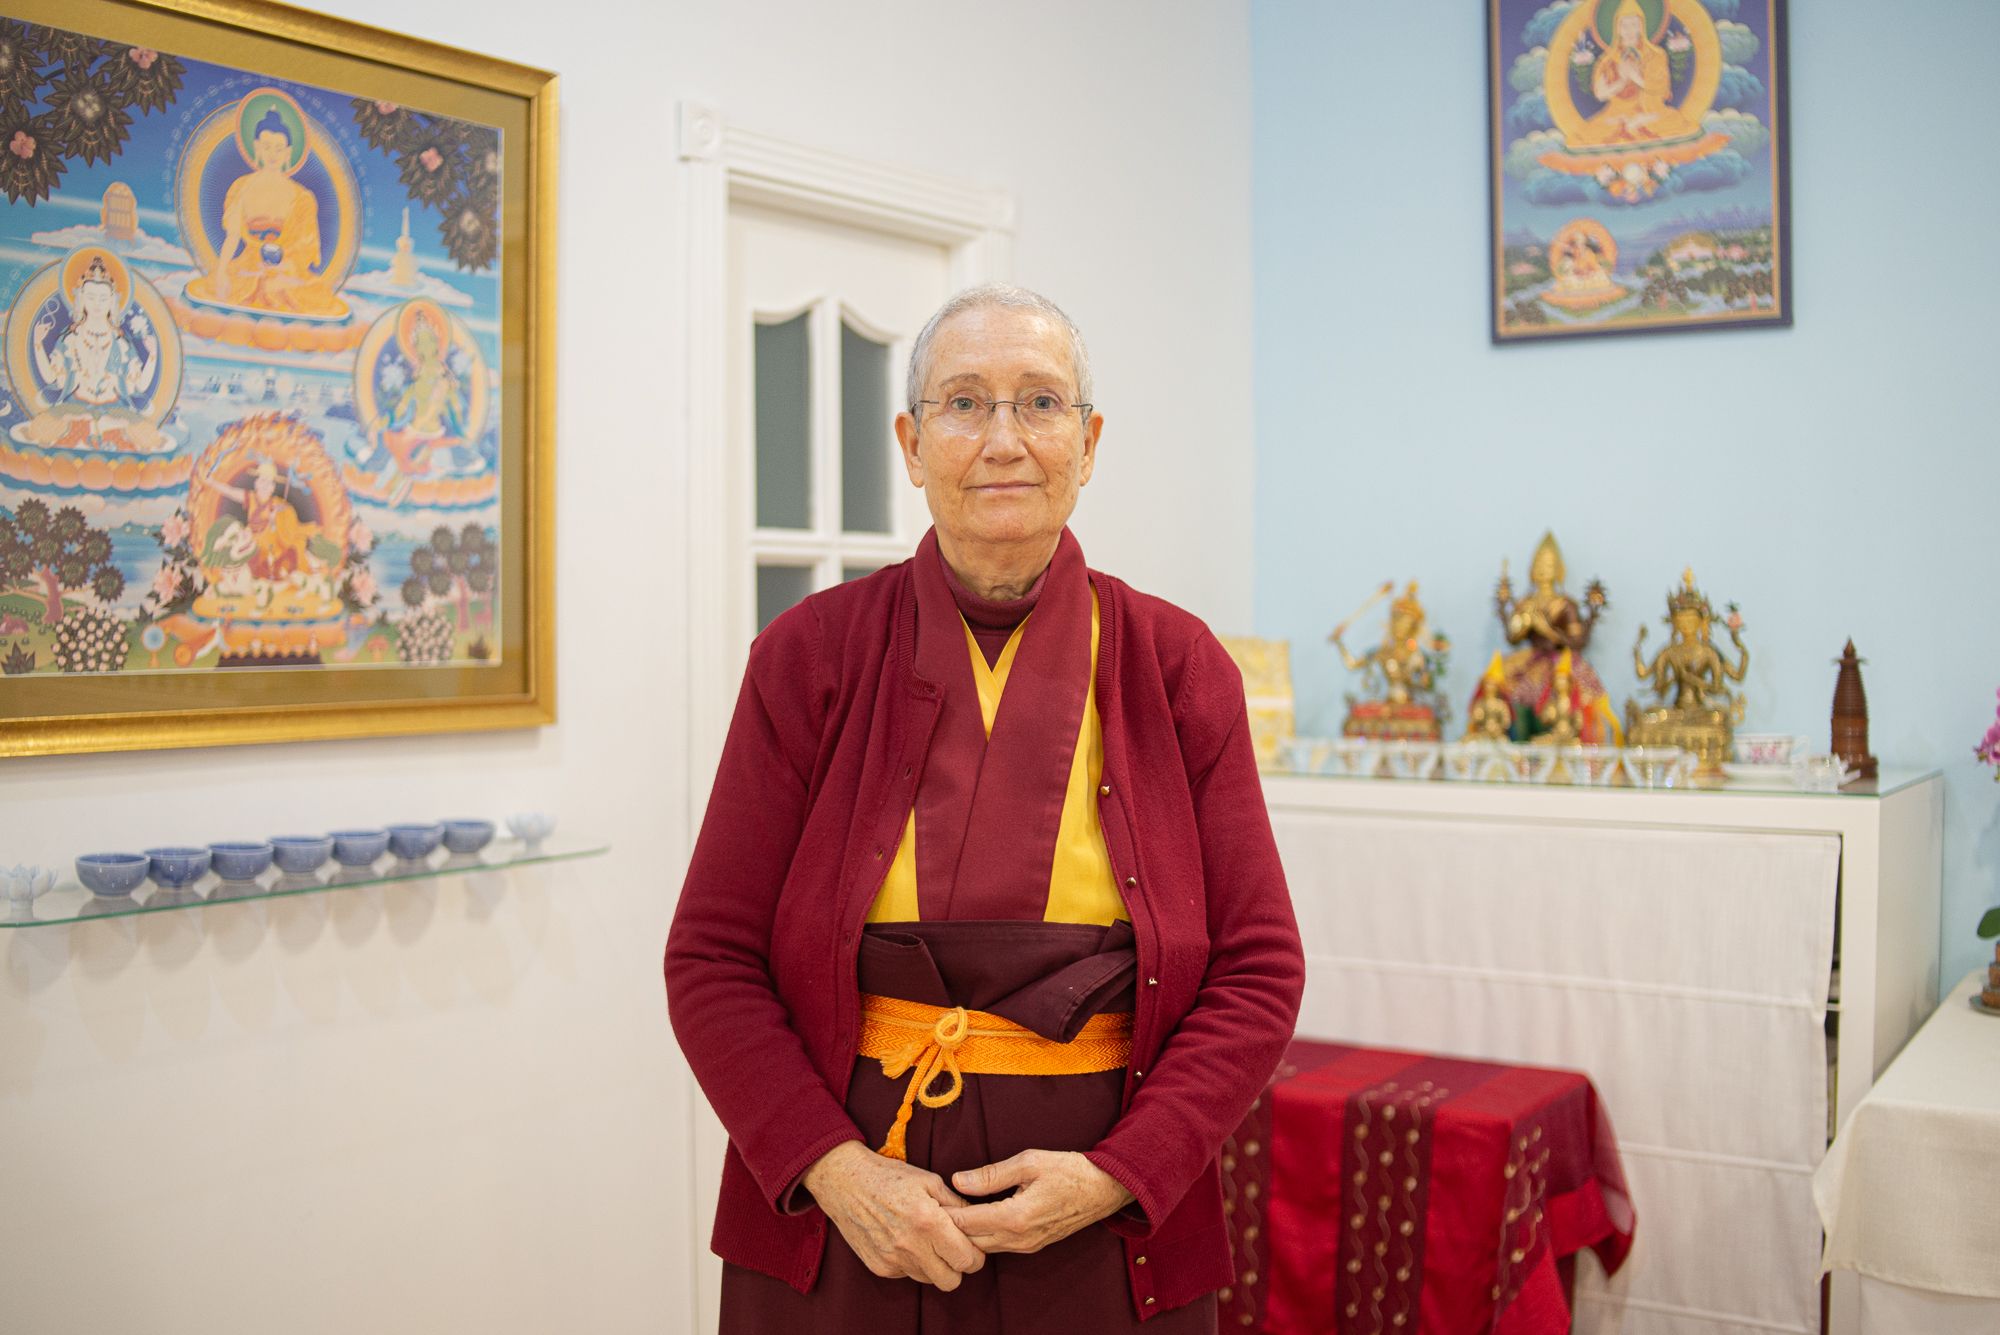 La monja kadampa de Jerez: “El mejor psicólogo es Buda, nadie conoce la mente como él”